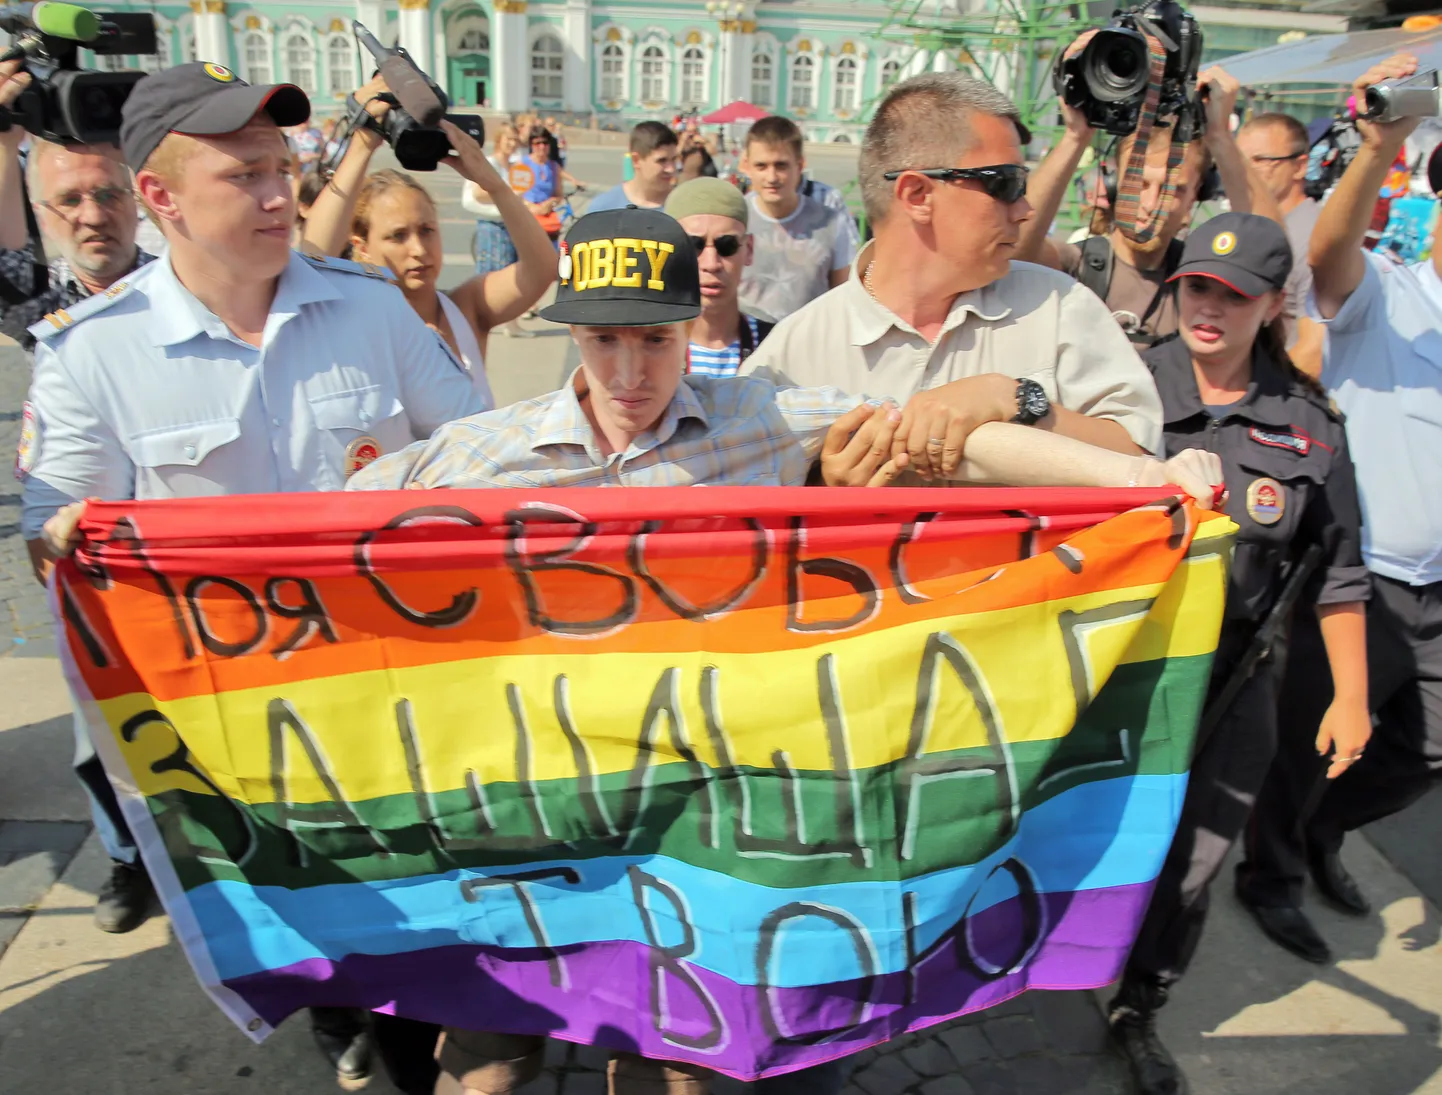 Акция гей-активиста в Питере в День ВДВ была очень недолгой.